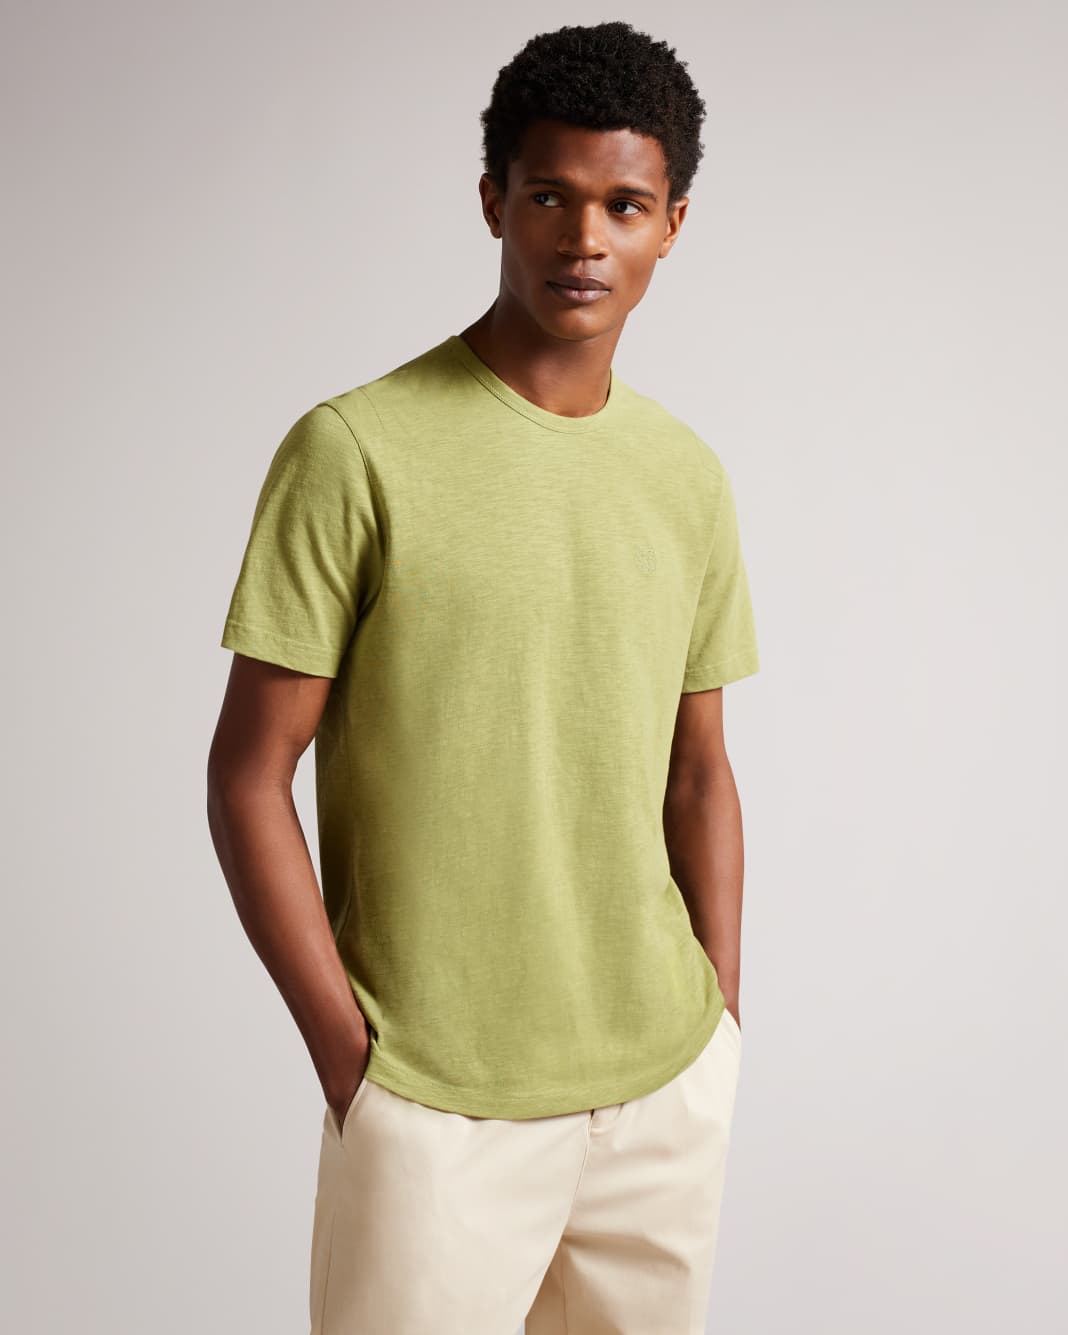 테드 베이커 반팔티 Ted Baker Short Sleeve T Shirt,Light Green